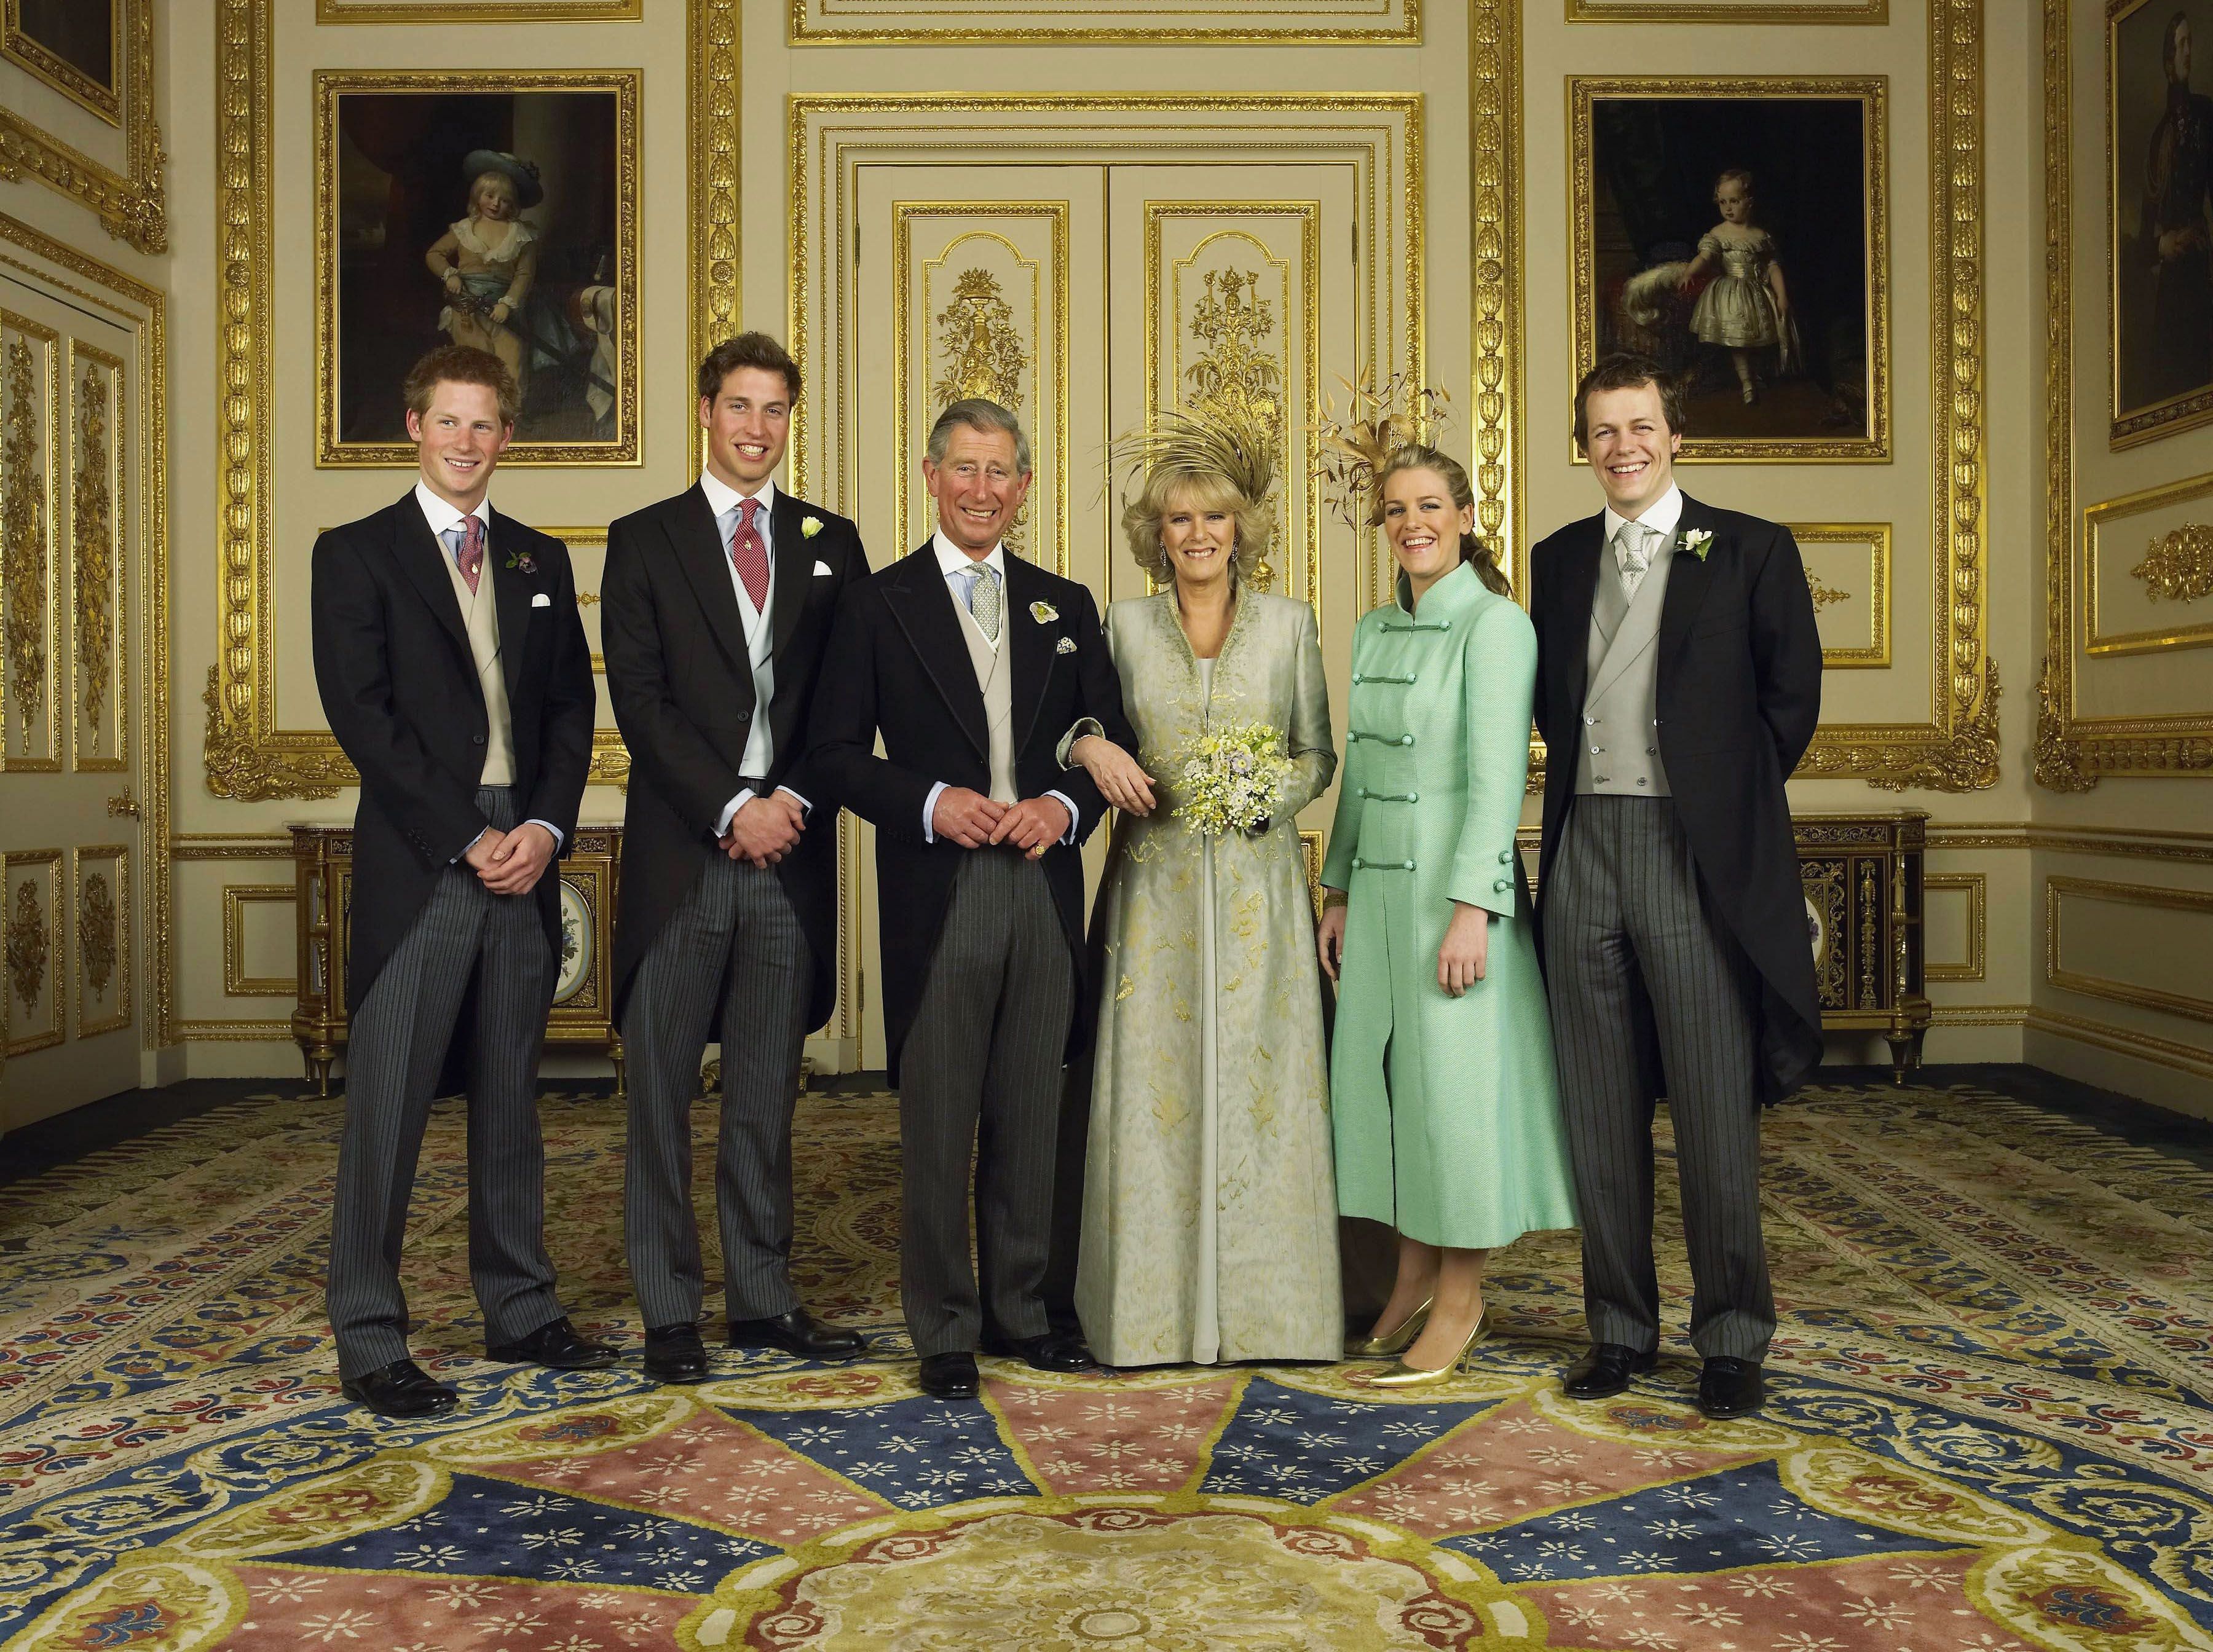 Príncipes Harry, William y Charles, duquesa Camilla y sus hijos Laura Lopes y Tom Parker-Bowles en Windsor en 2005. | Foto: Getty Images